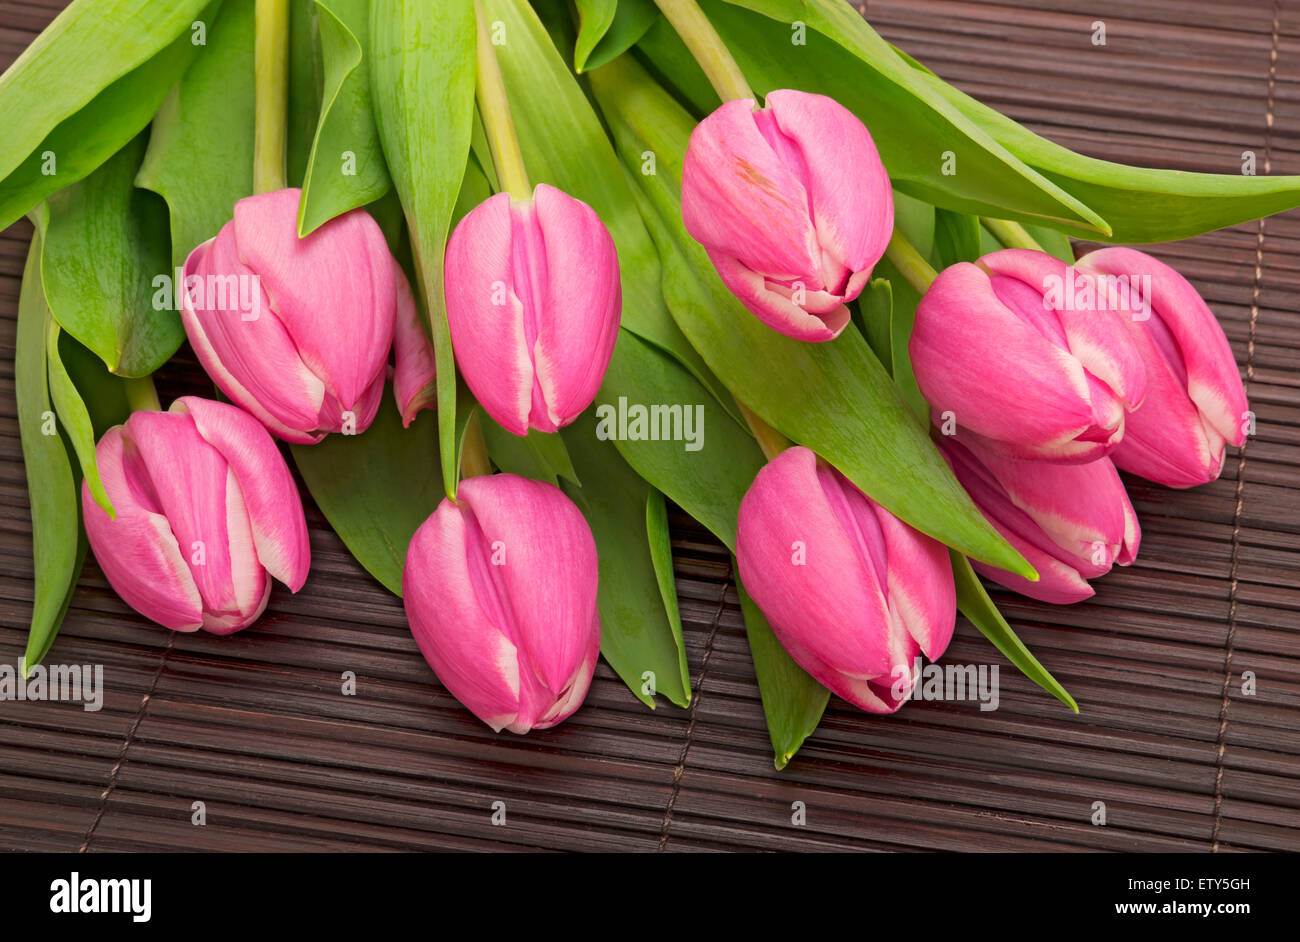 Gros plan d'un bouquet de tulipes roses fraîchement coupées fleurs de tulipes Banque D'Images